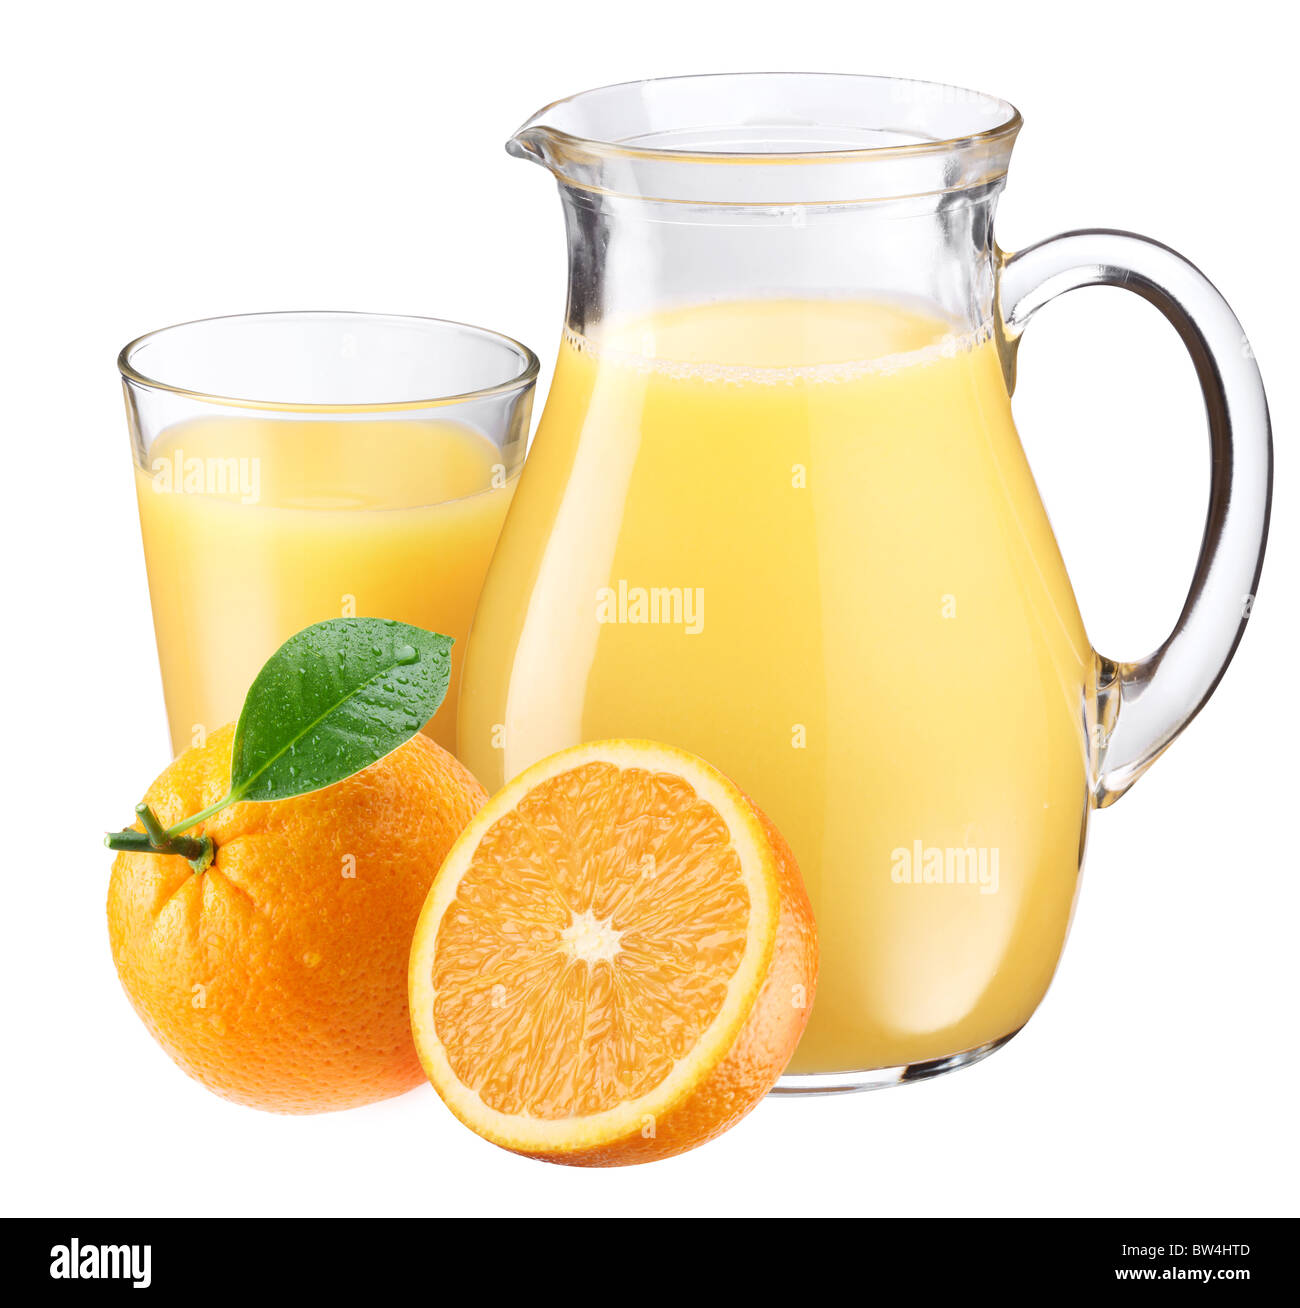 Bicchiere pieno e un vasetto di succo di arancia e frutti sono nelle vicinanze. Isolato su un bianco. Foto Stock